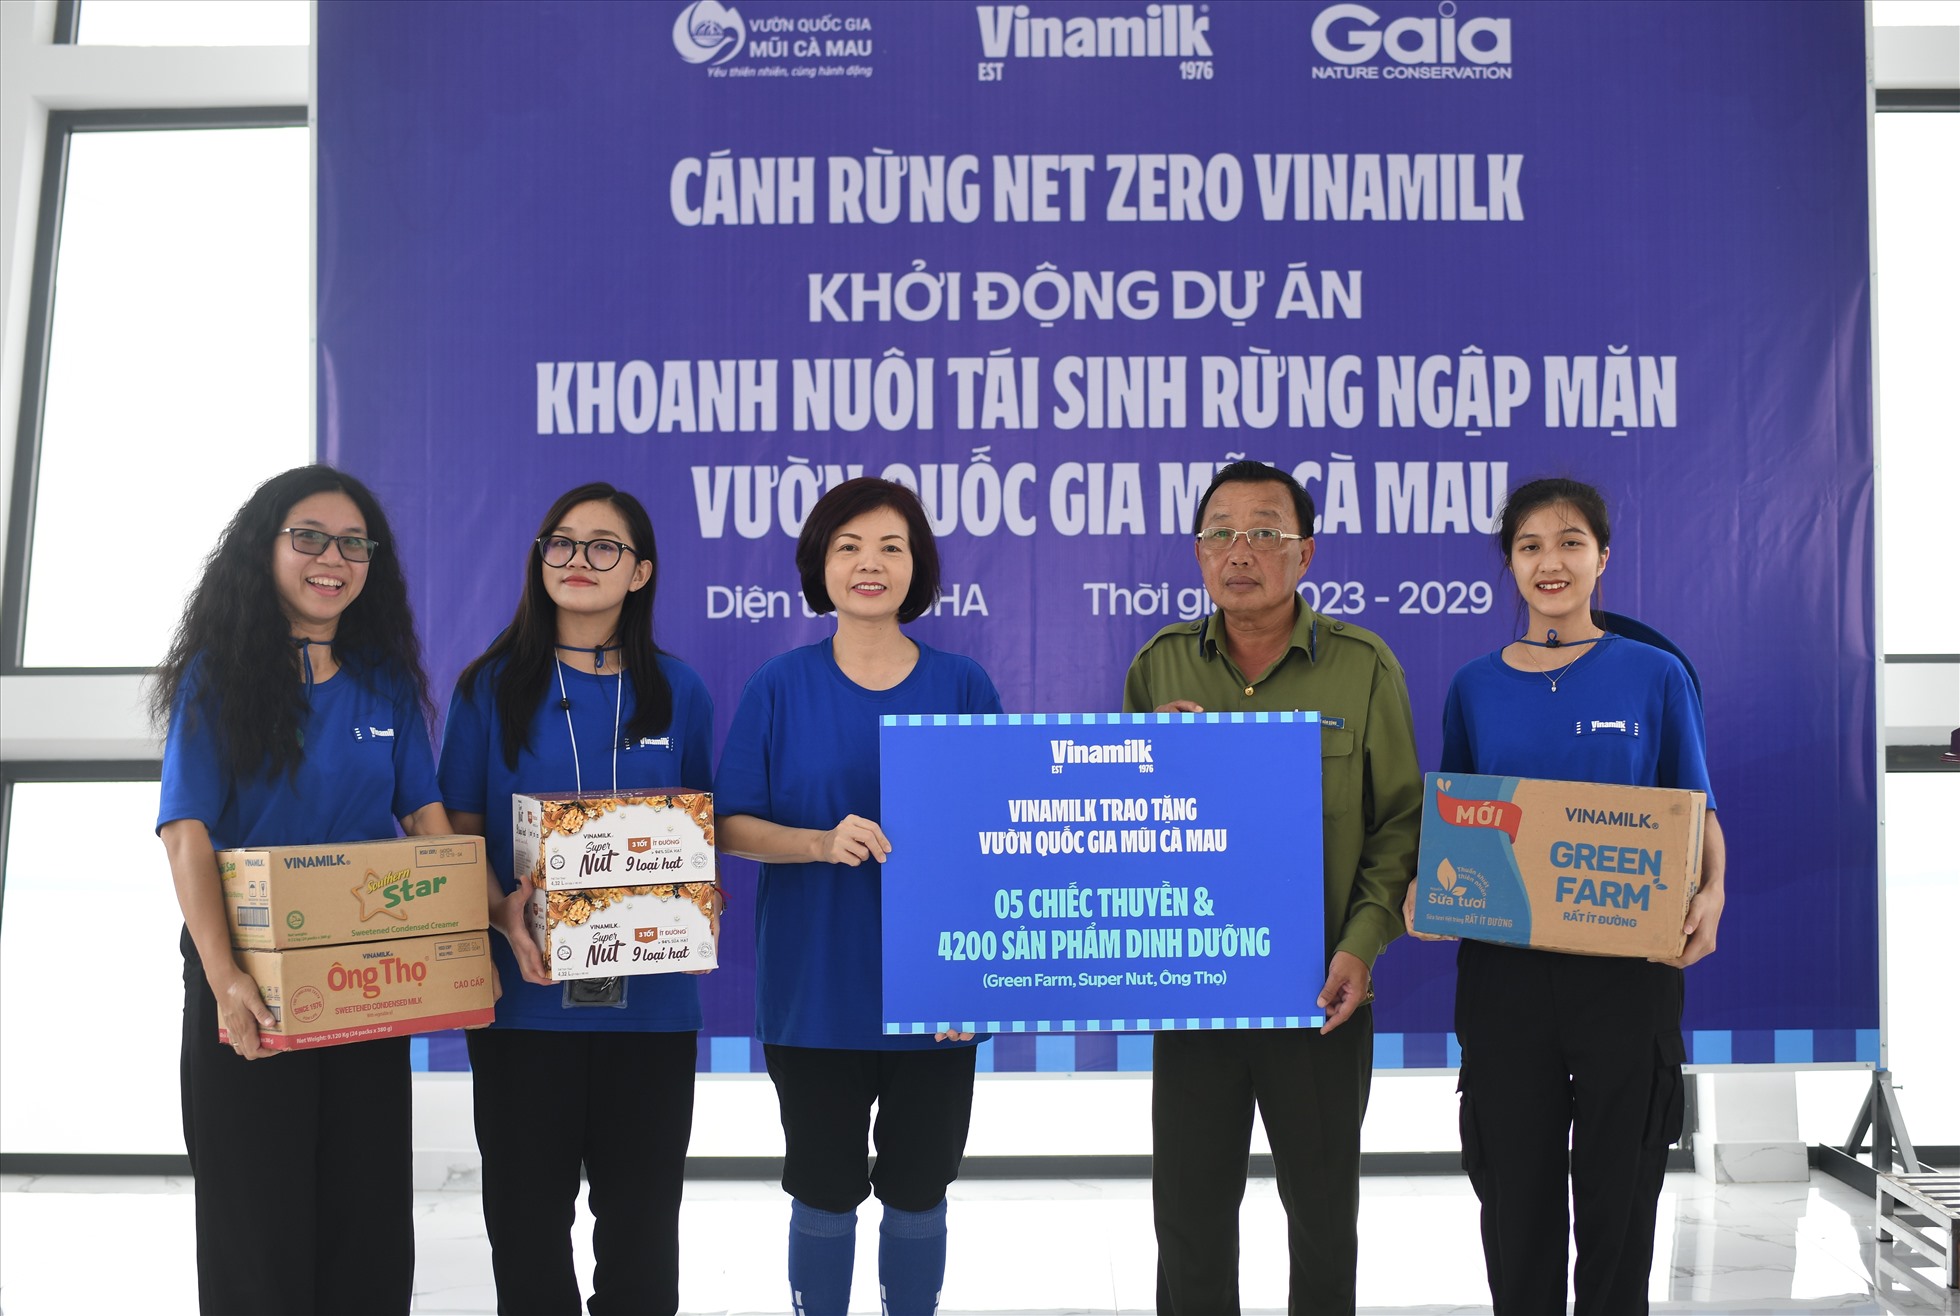 Bà Bùi Thị Hương (thứ ba từ trái qua), Giám đốc điều hành Vinamilk, đại diện trao tặng 05 chiếc thuyền và 4.200 sản phẩm dinh dưỡng cho đại diện Vườn quốc gia Mũi Cà Mau. Ảnh: Vinamilk